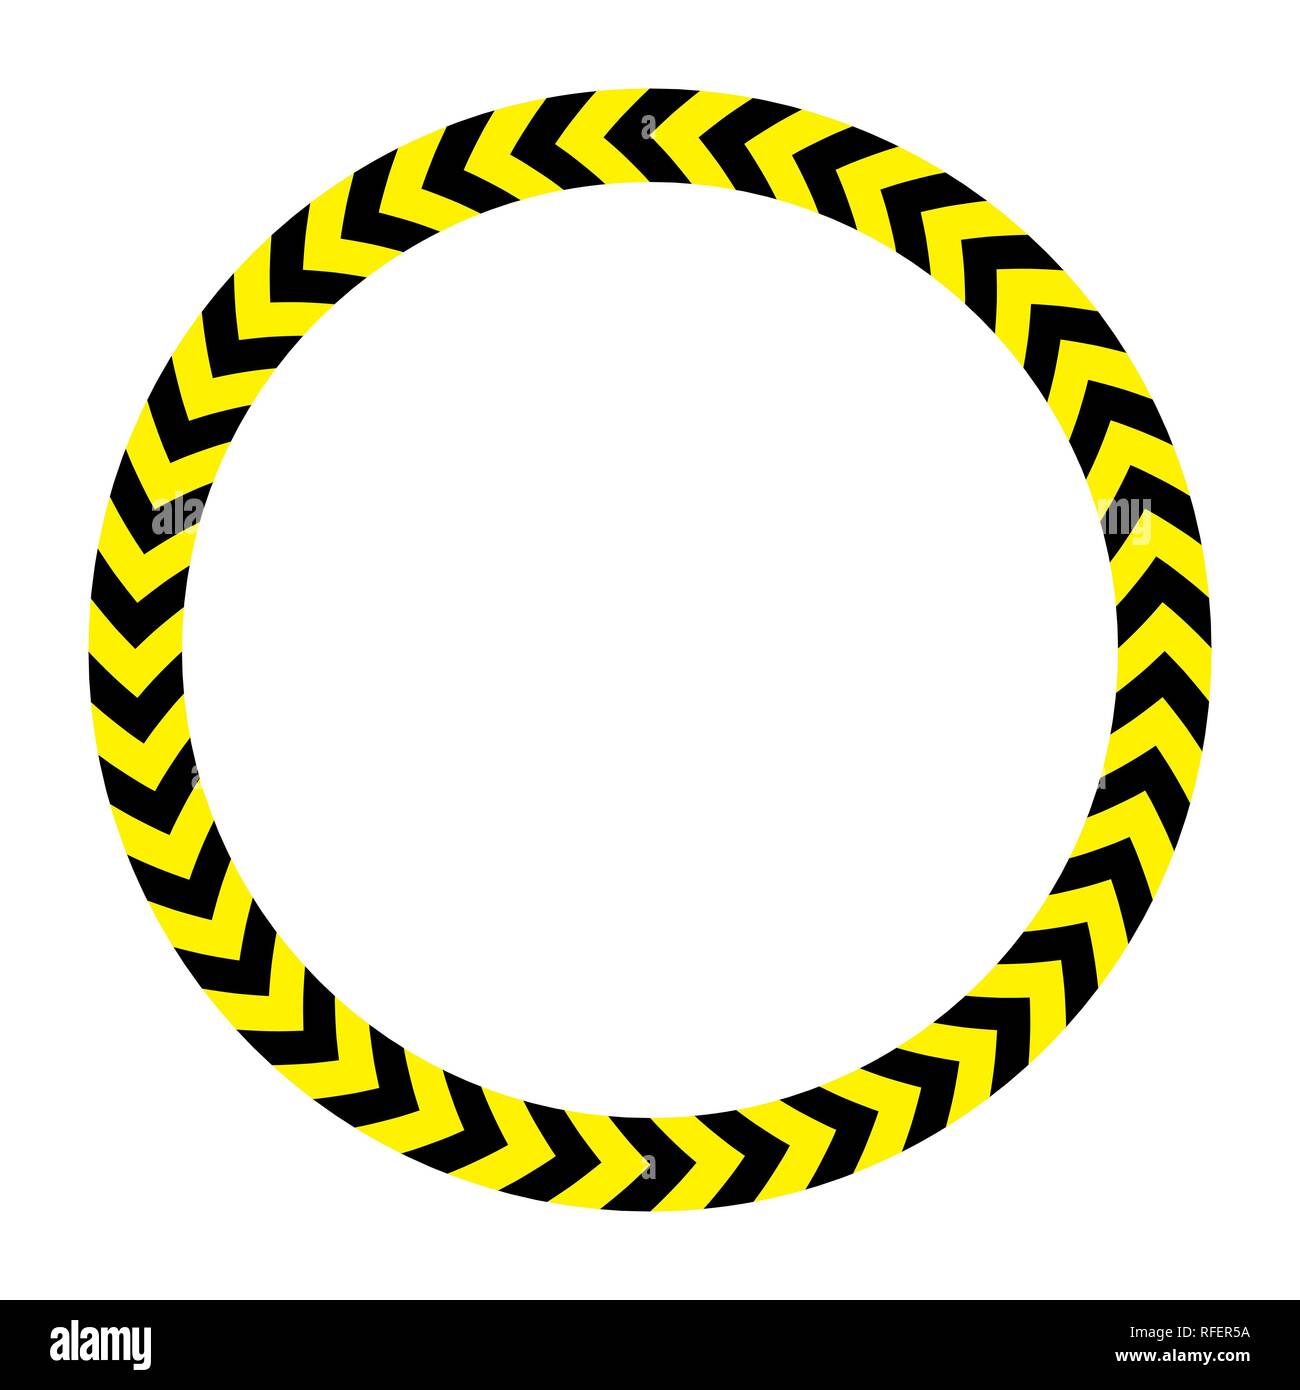 Schwarz-gelbe Gefahr tape Rahmen. Vektor Stock Vektor